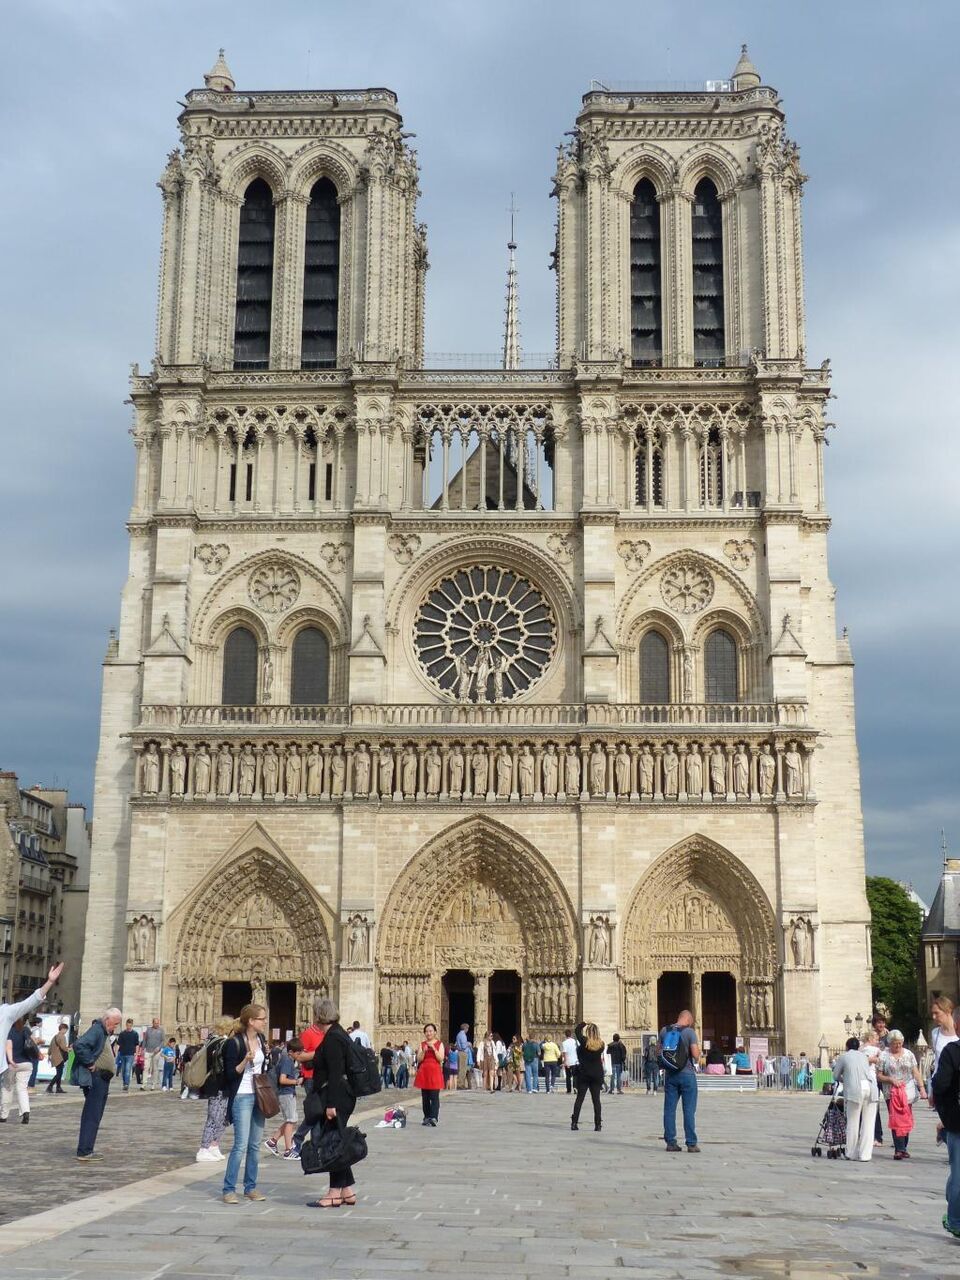 ノートルダム大聖堂 パリ 壁紙はベークライトヒカル ファサード 教会 高精細の画像を持っているミリアンペア 材料を入力します 壁紙